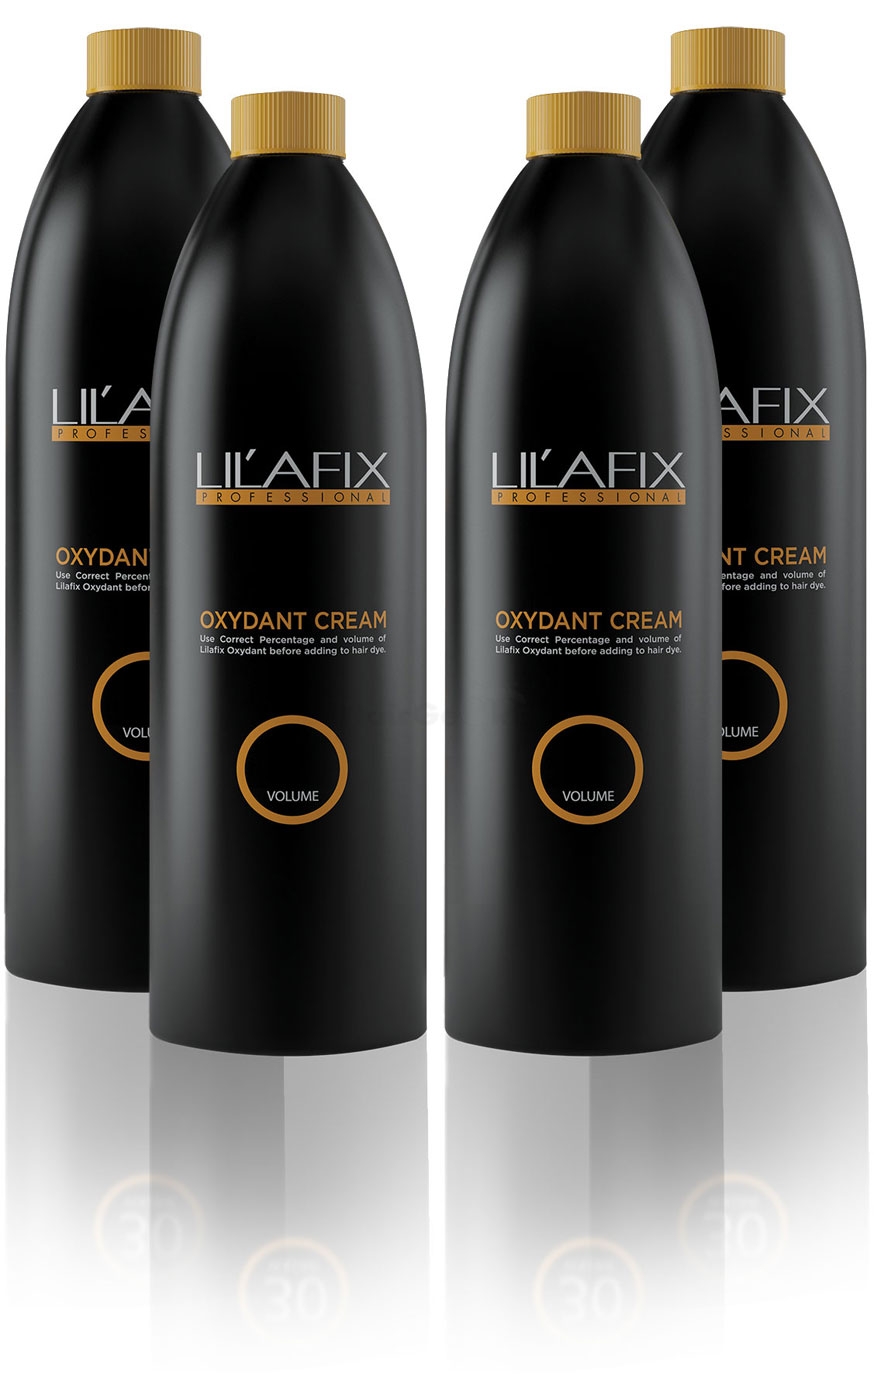 Lilafix Oxydant Cream Oxidant Wasserstoff 6% Aktion - 4x 1l = 4l